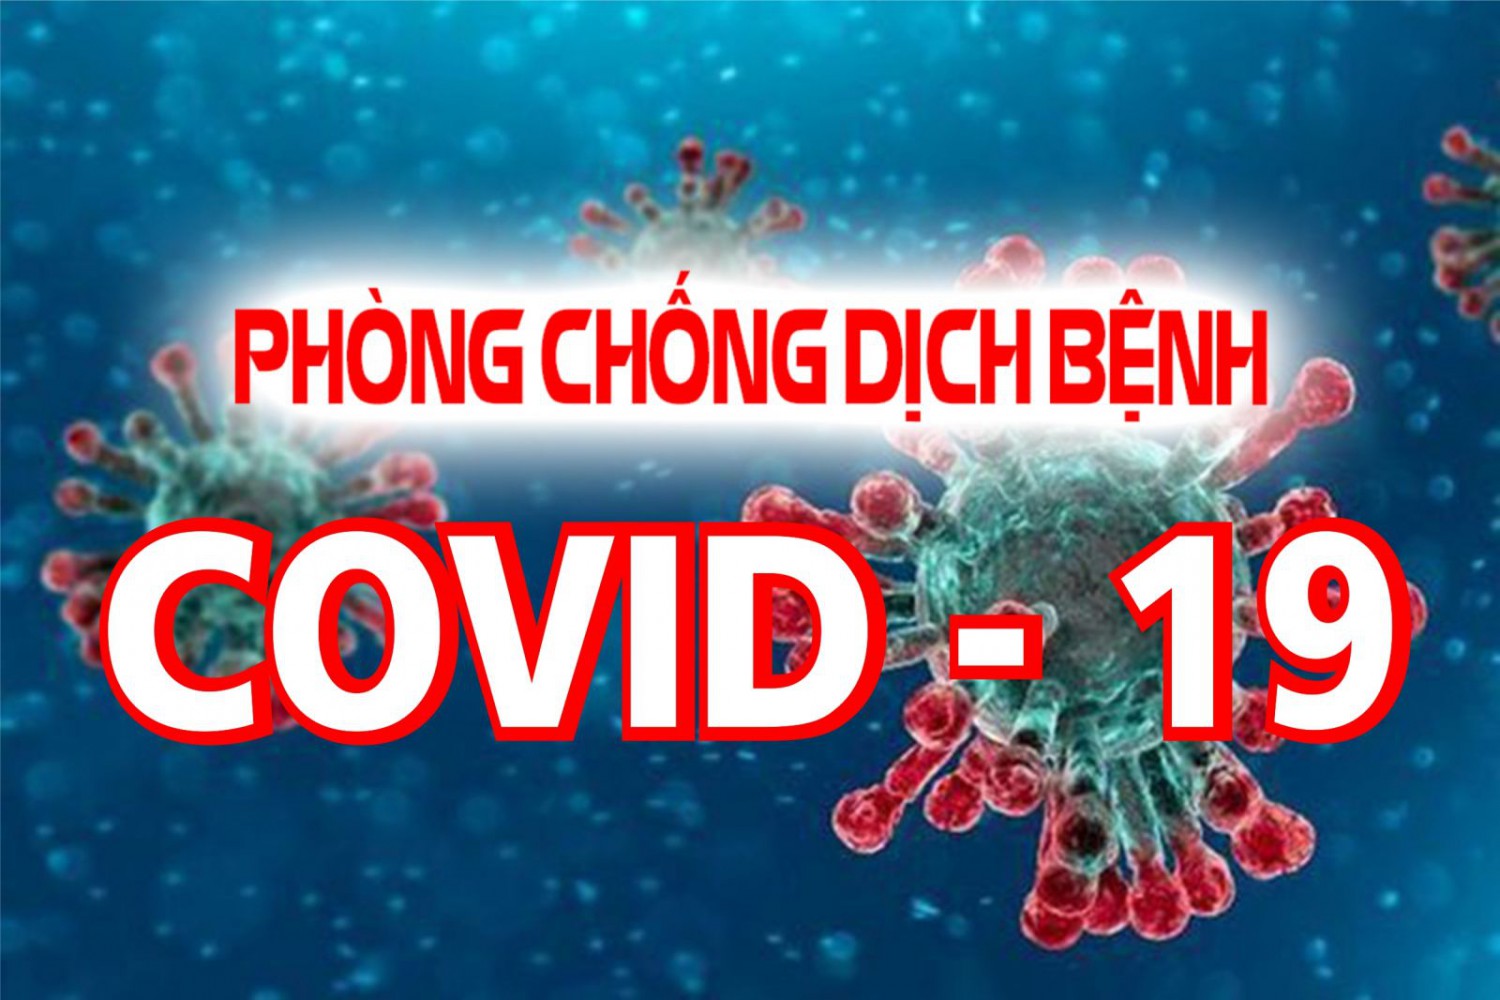 Đắk Lắk: UBND tỉnh họp bàn công tác phòng chống dịch Covid-19